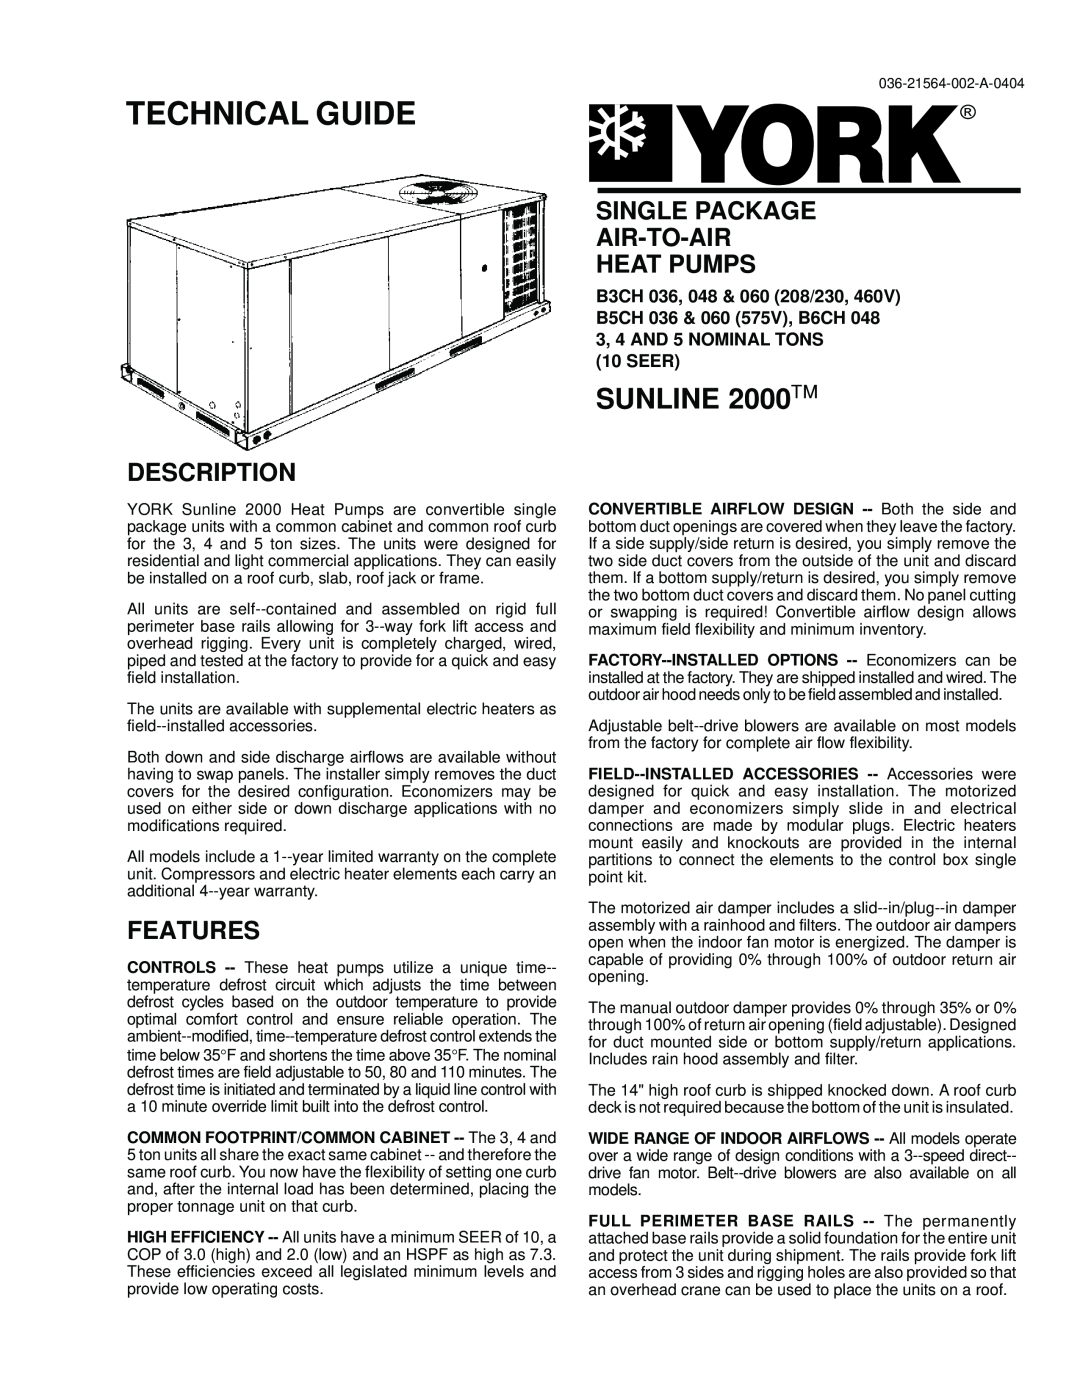 York 60, 36, 48 warranty Technical Guide, Air Conditioners, Description, Dce, Cg, Warranty 